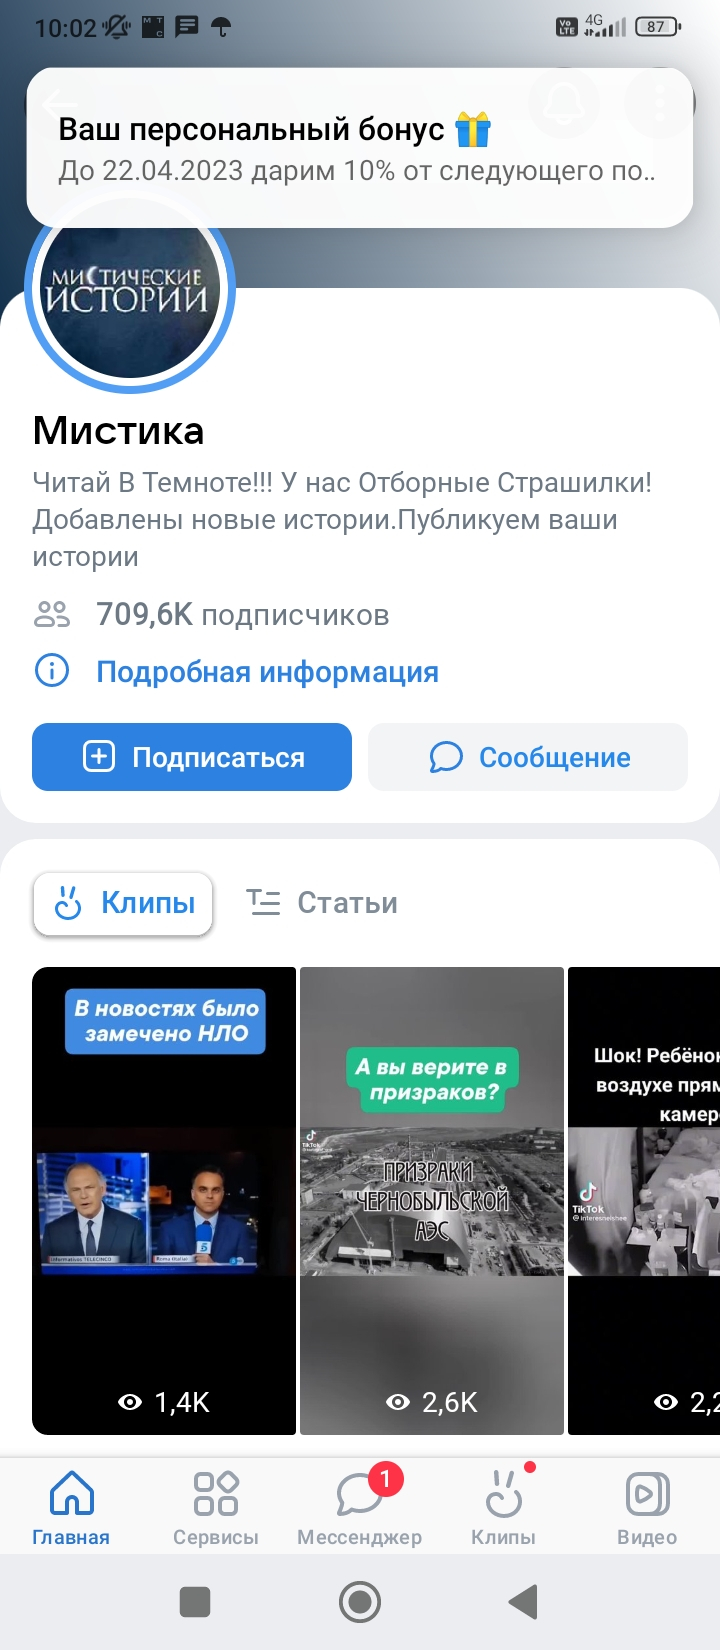 ВКонтакте - Беззаконие и модераторы